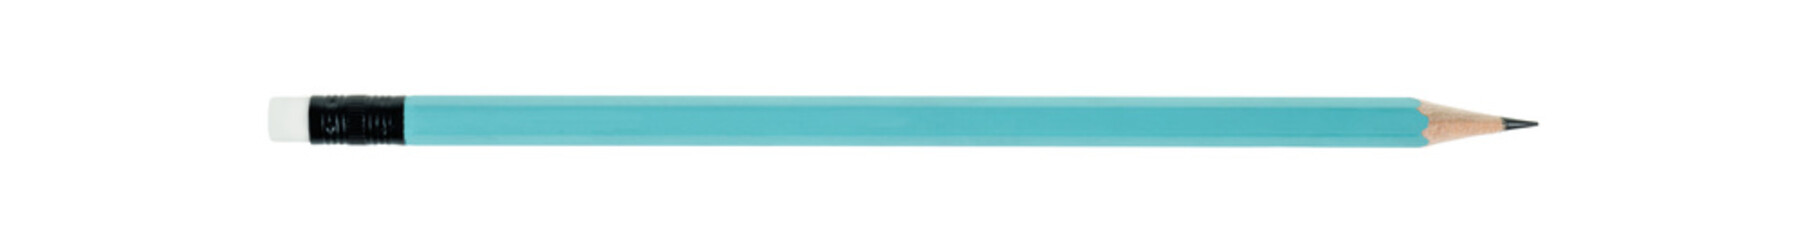 Blue pastel color pencil